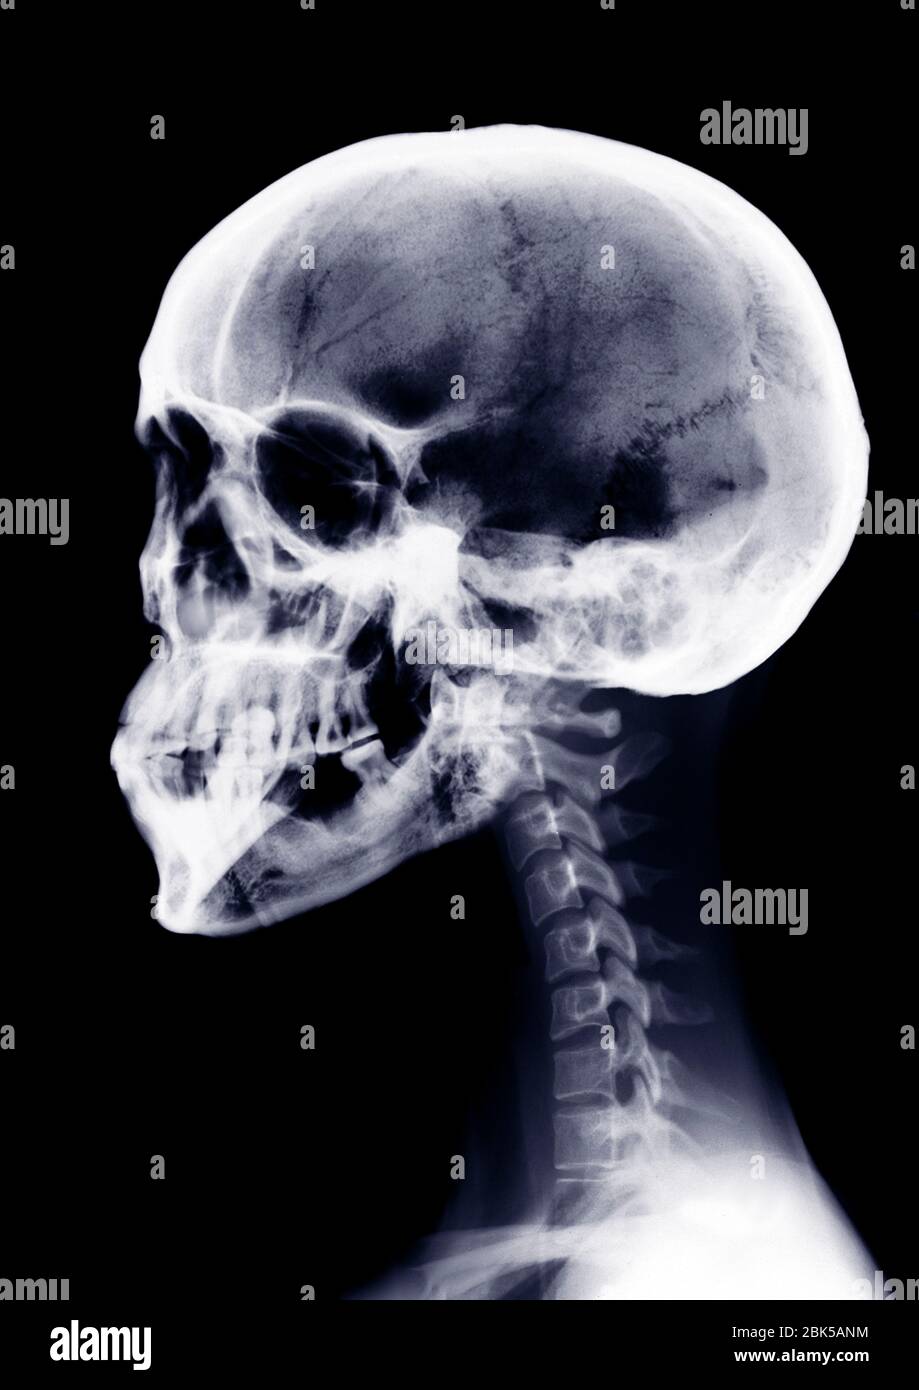 Human skull and neck, X-ray. Stock Photo